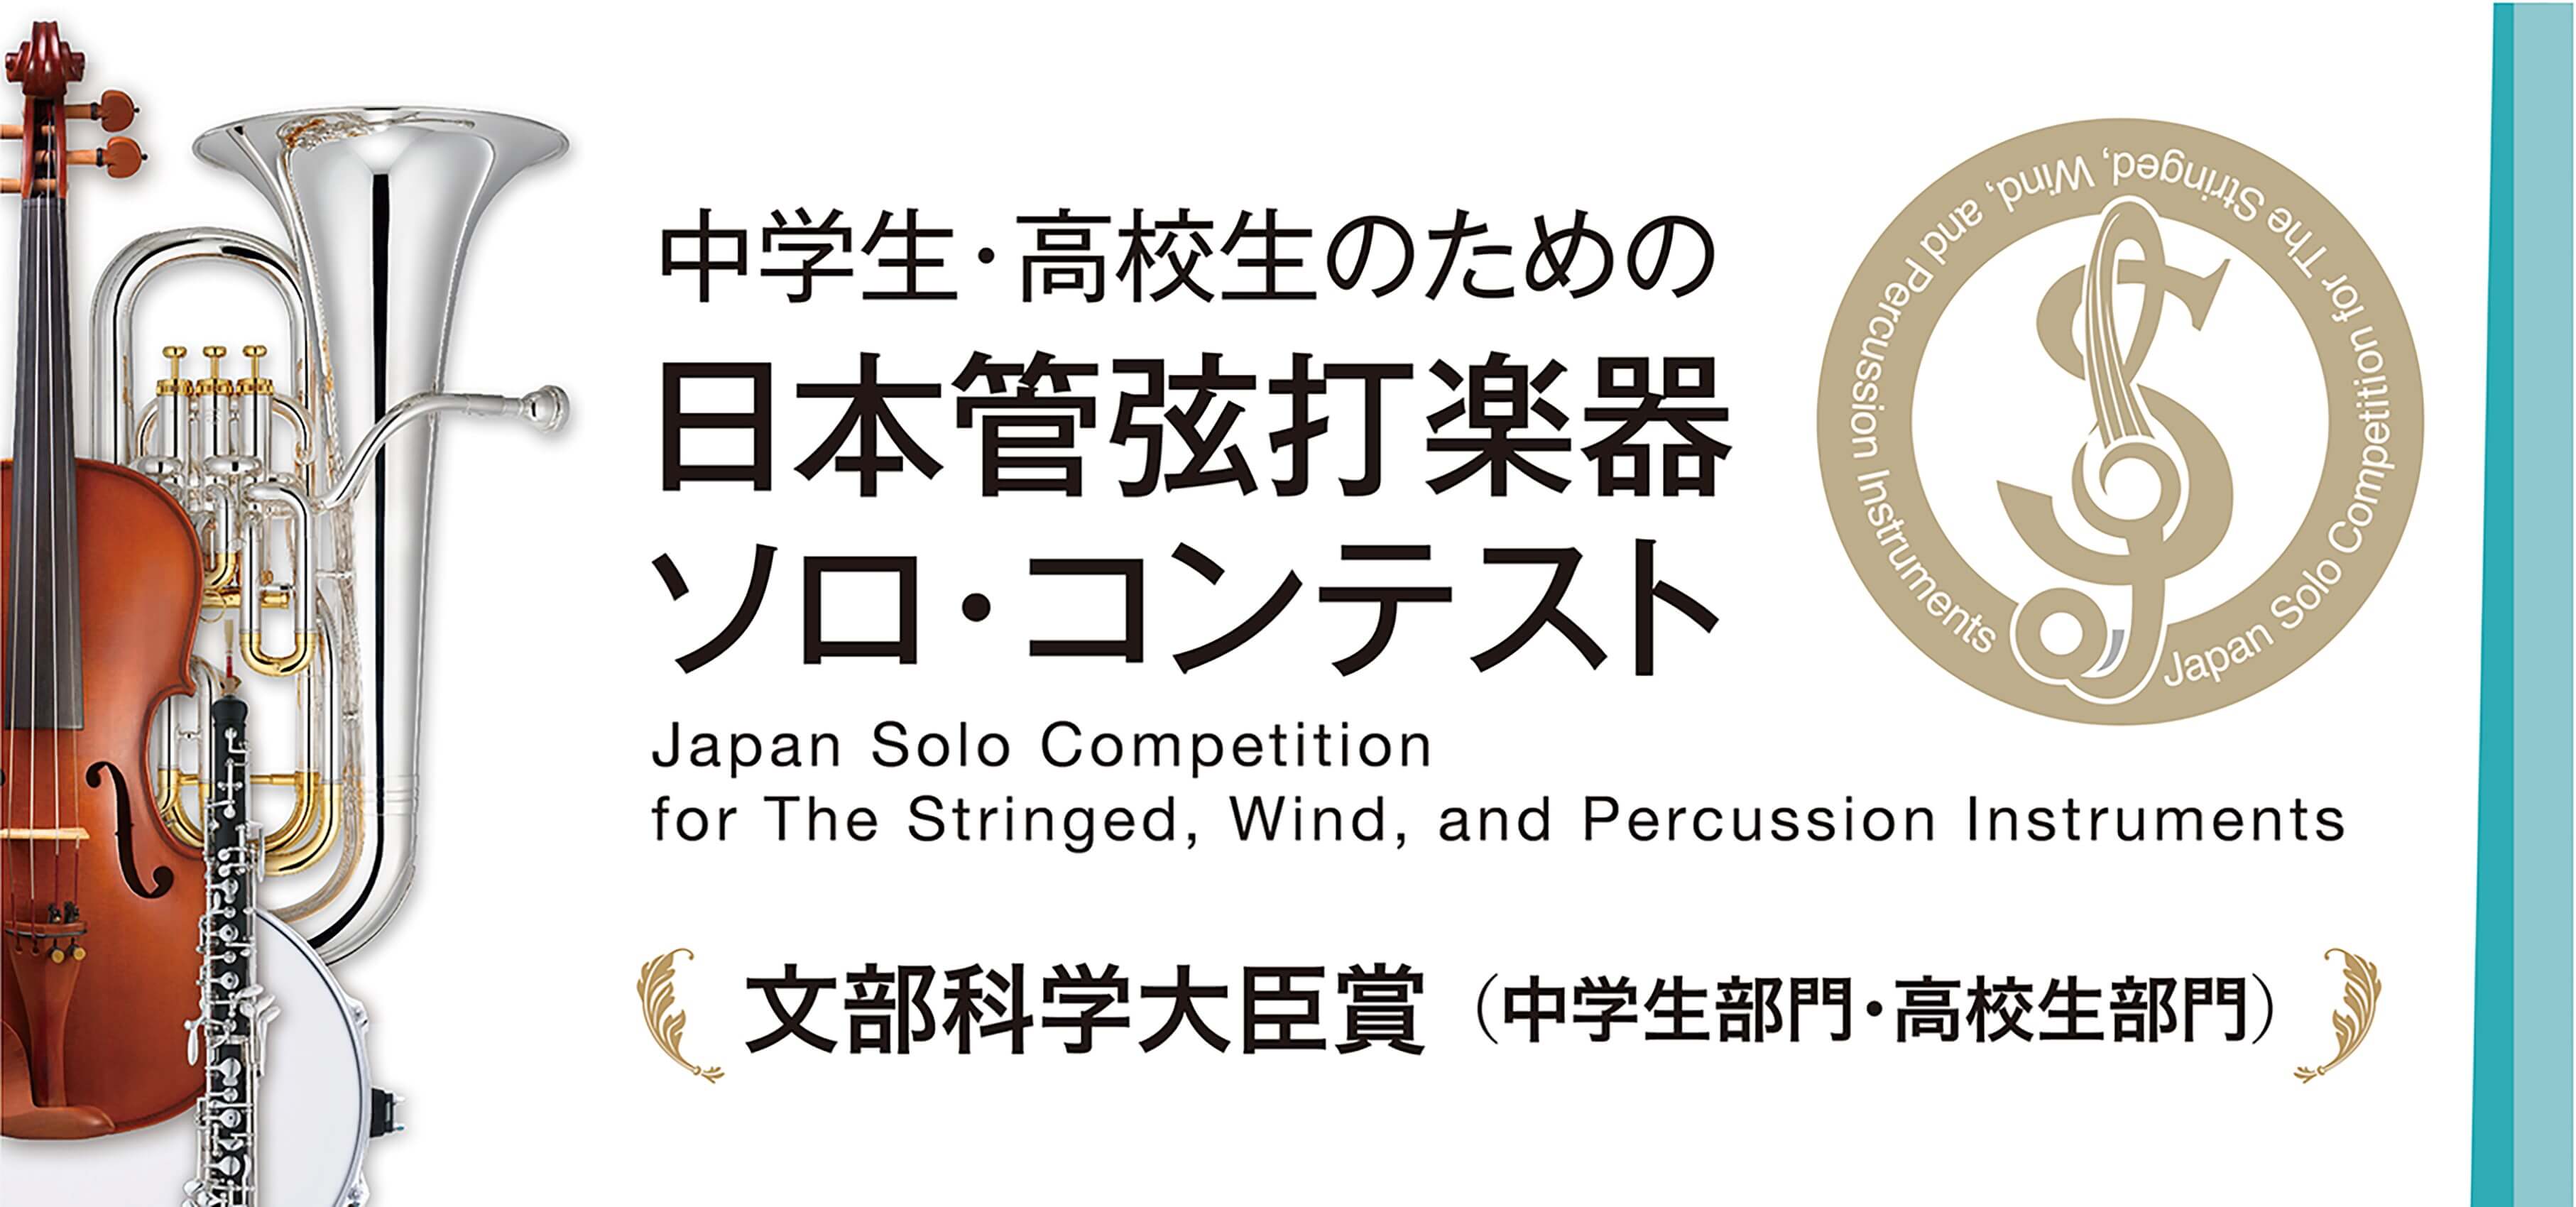 中学生・高校生のための第17回 日本管弦打楽器ソロ・コンテスト